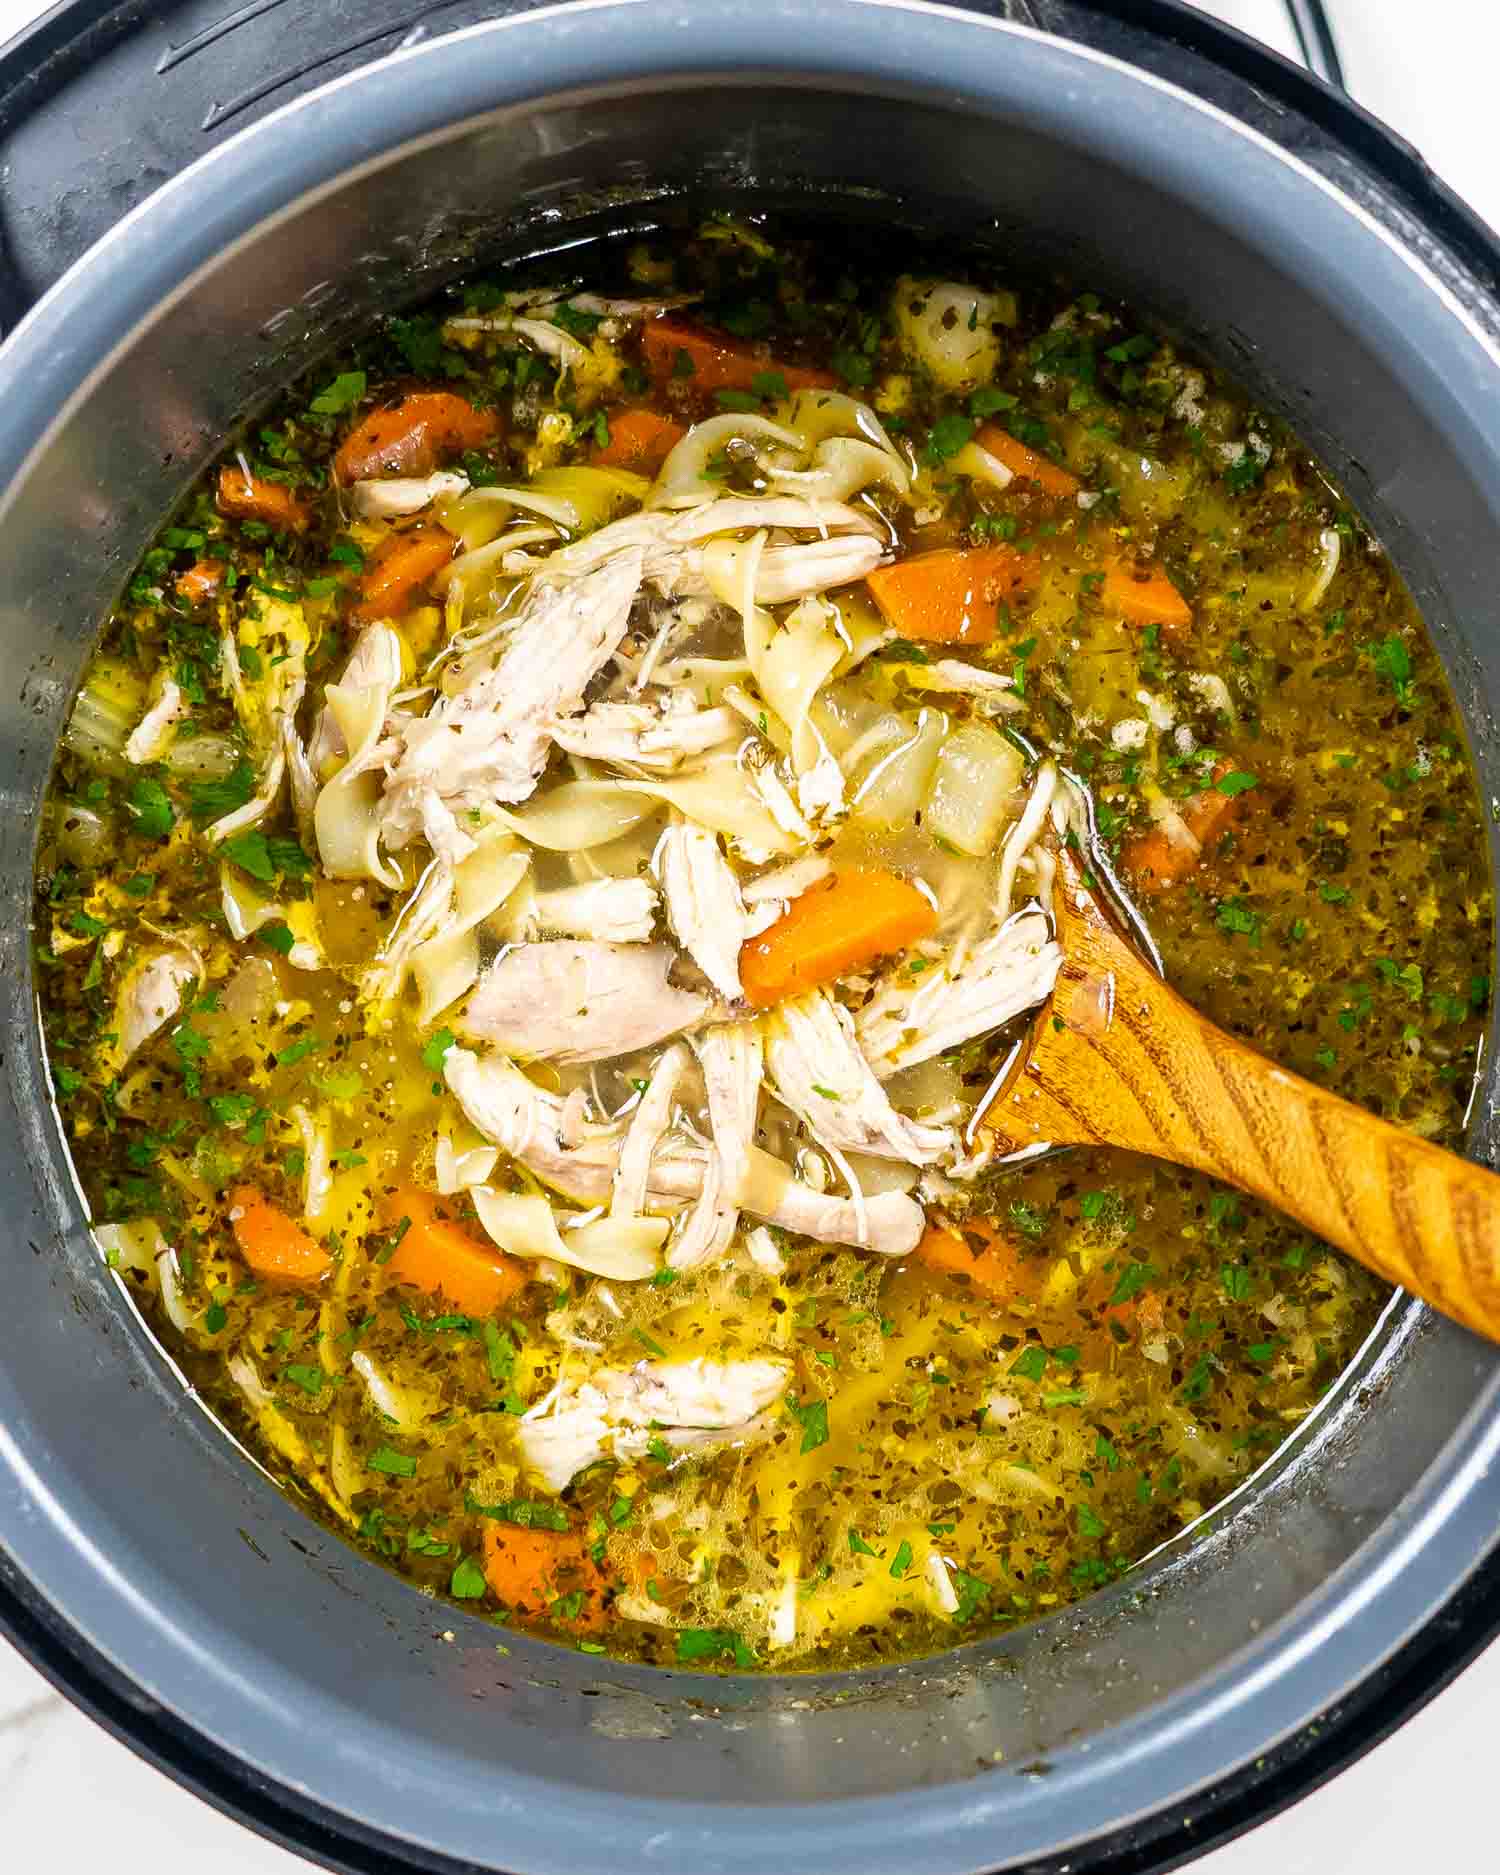 https://www.jocooks.com/wp-content/uploads/2018/01/instant-pot-chicken-noodle-soup-1-4-1.jpg